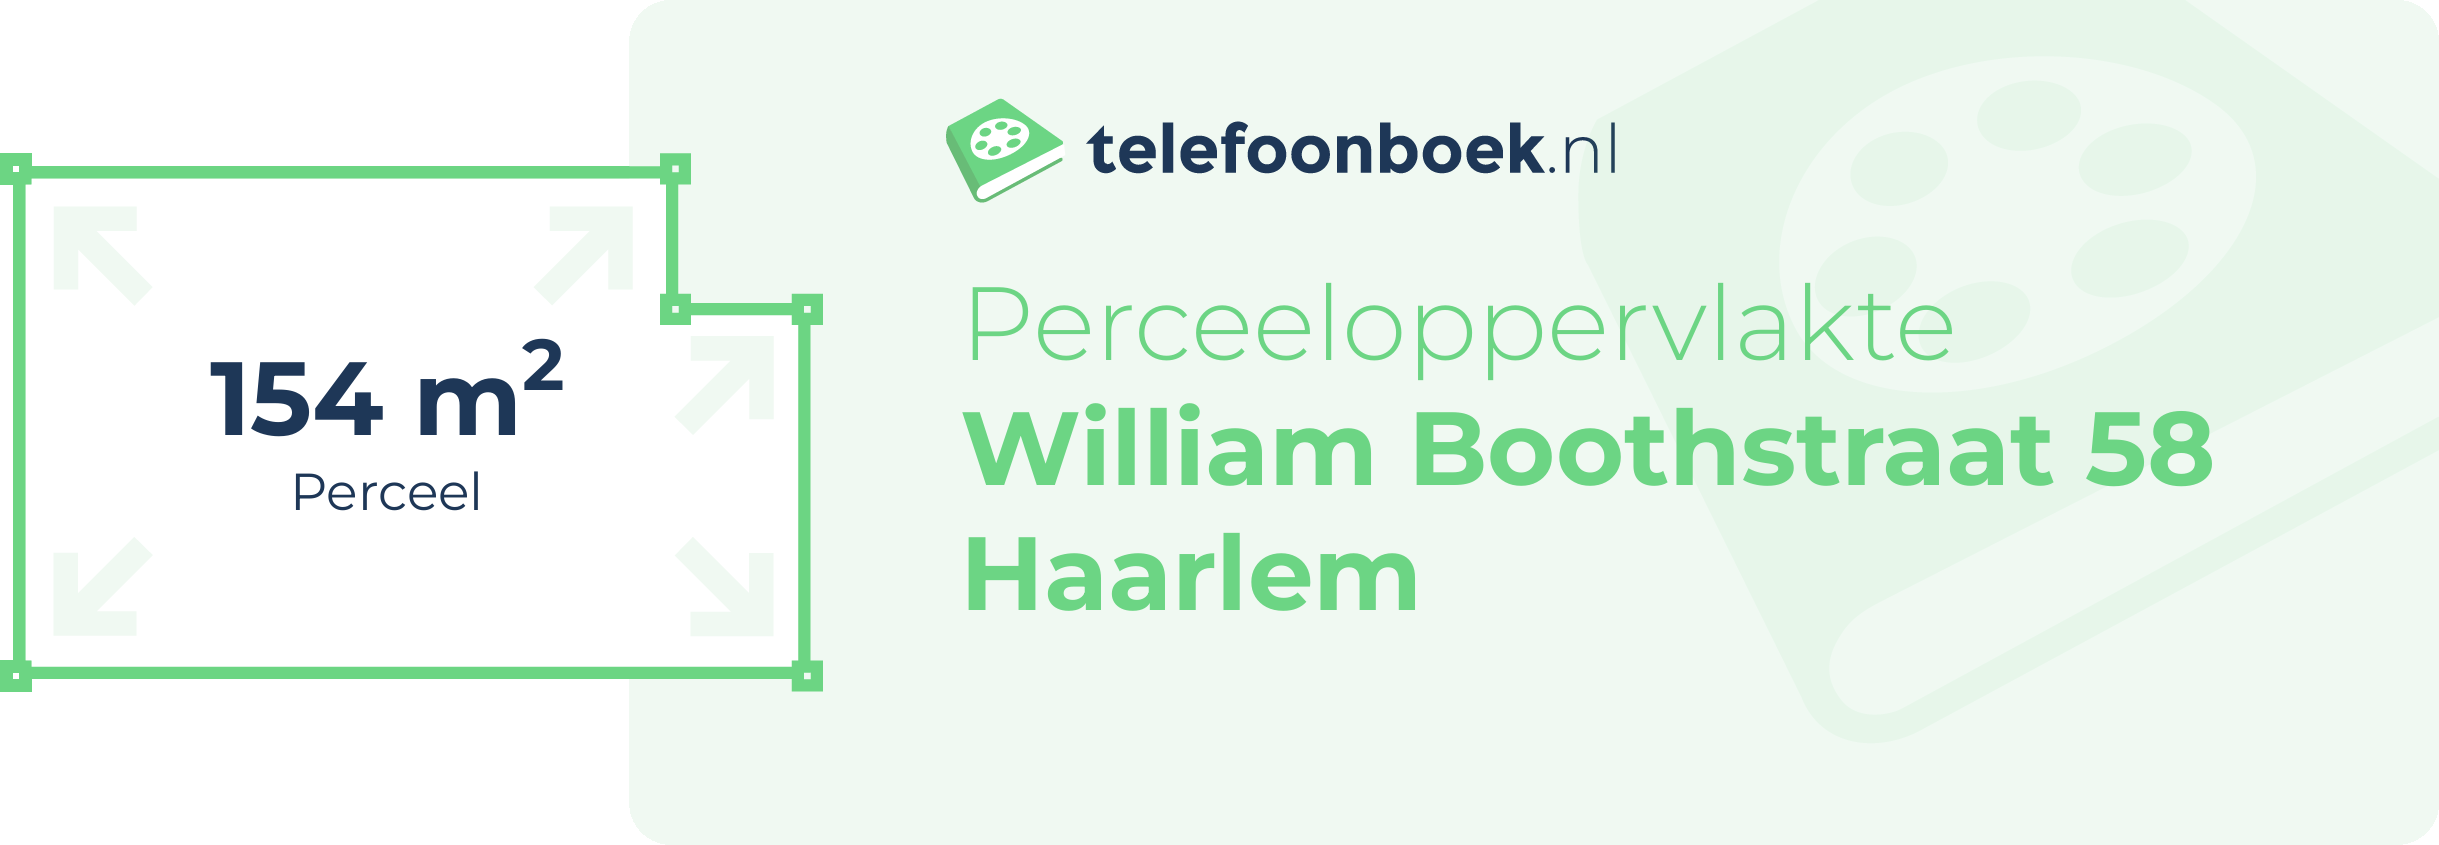 Perceeloppervlakte William Boothstraat 58 Haarlem